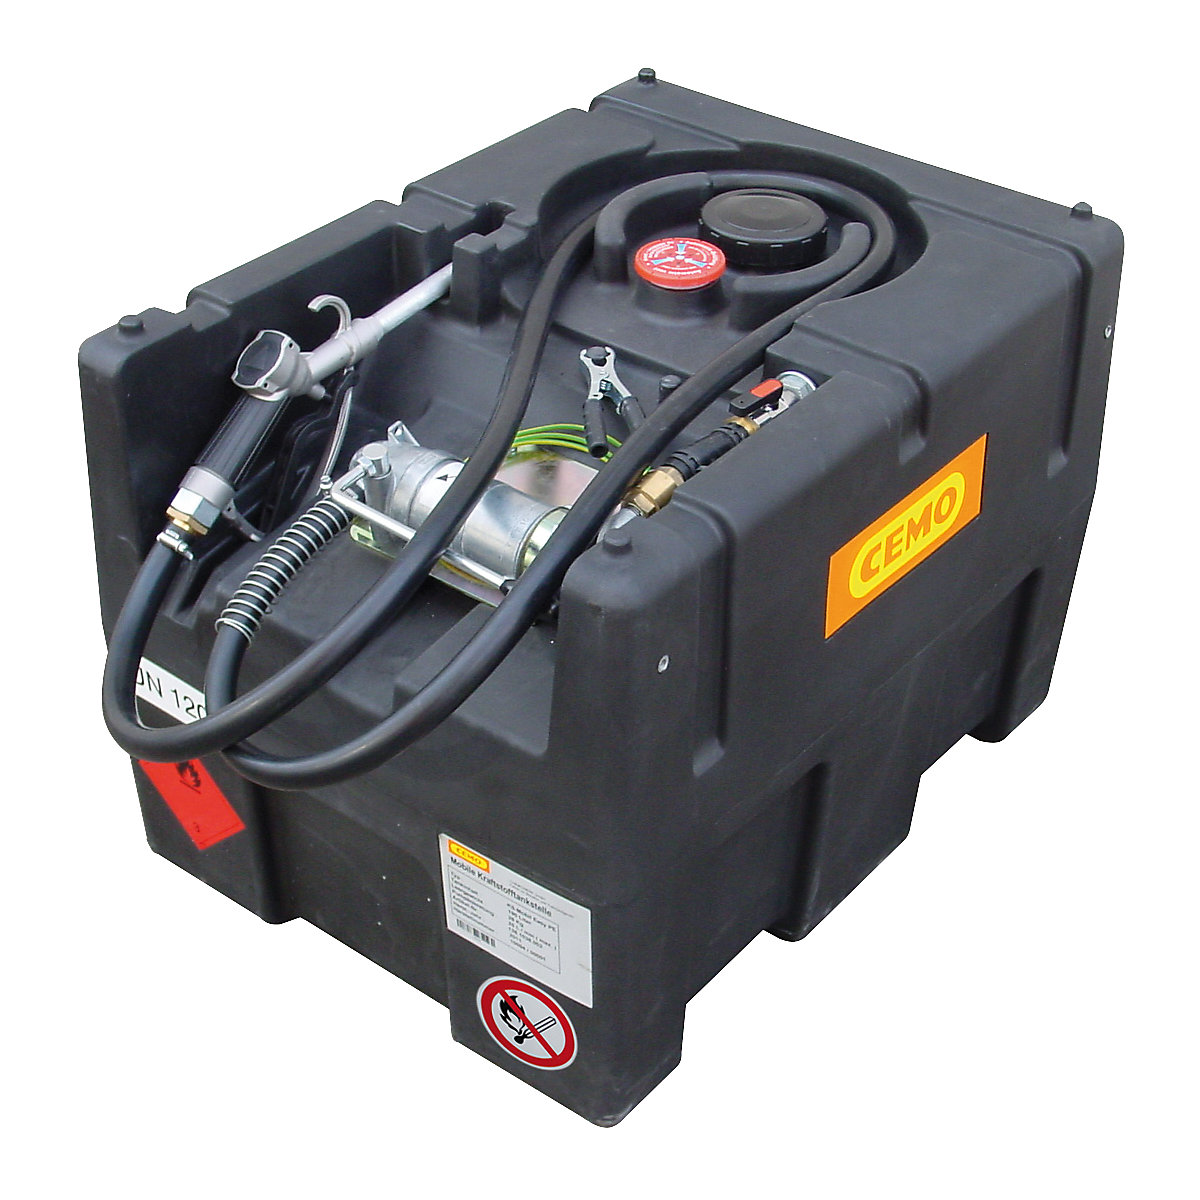 Sistema de abastecimento para gasolina KS-Mobil Easy – CEMO, com bomba manual, volume 190 l-2